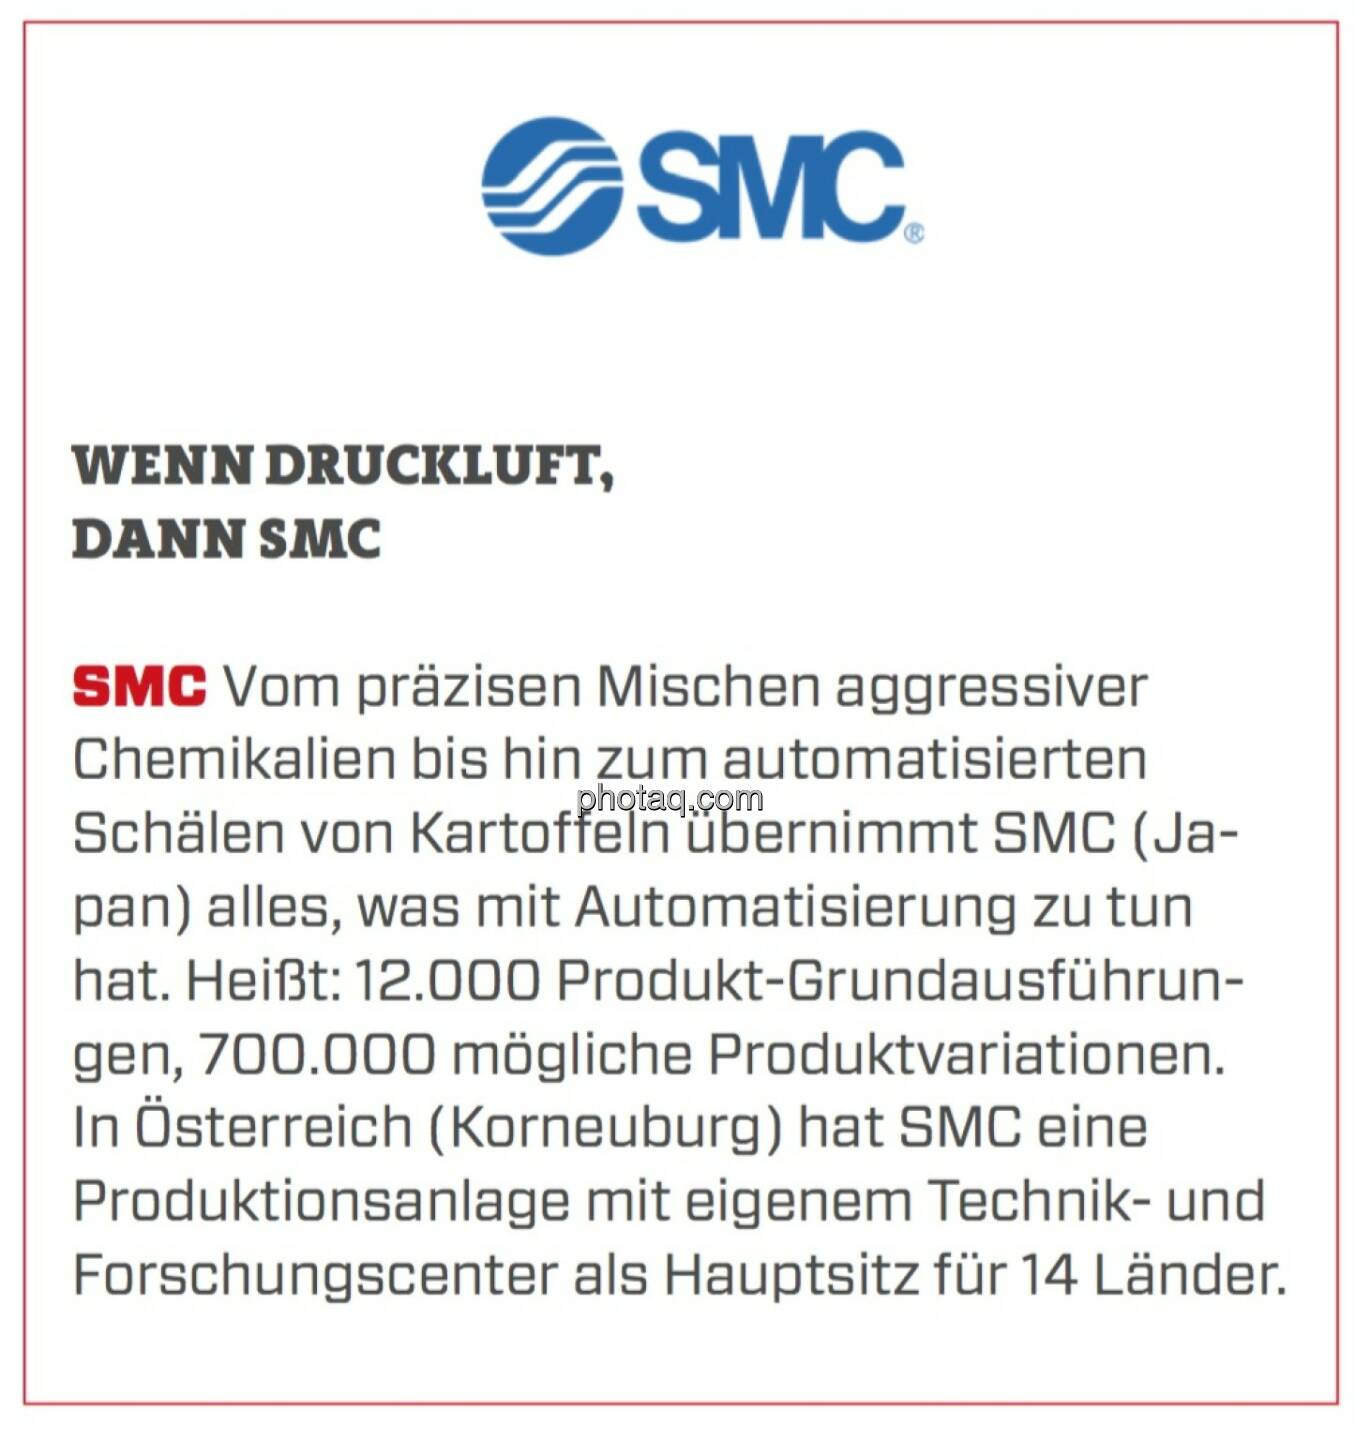 SMC - Wenn Druckluft, dann SMC: Vom präzisen Mischen aggressiver Chemikalien bis hin zum automatisierten Schälen von Kartoffeln übernimmt SMC (Japan) alles, was mit Automatisierung zu tun hat. Heißt: 12.000 Produkt-Grundausführungen, 700.000 mögliche Produktvariationen. In Österreich (Korneuburg) hat SMC eine Produktionsanlage mit eigenem Technik- und Forschungscenter als Hauptsitz für 14 Länder.